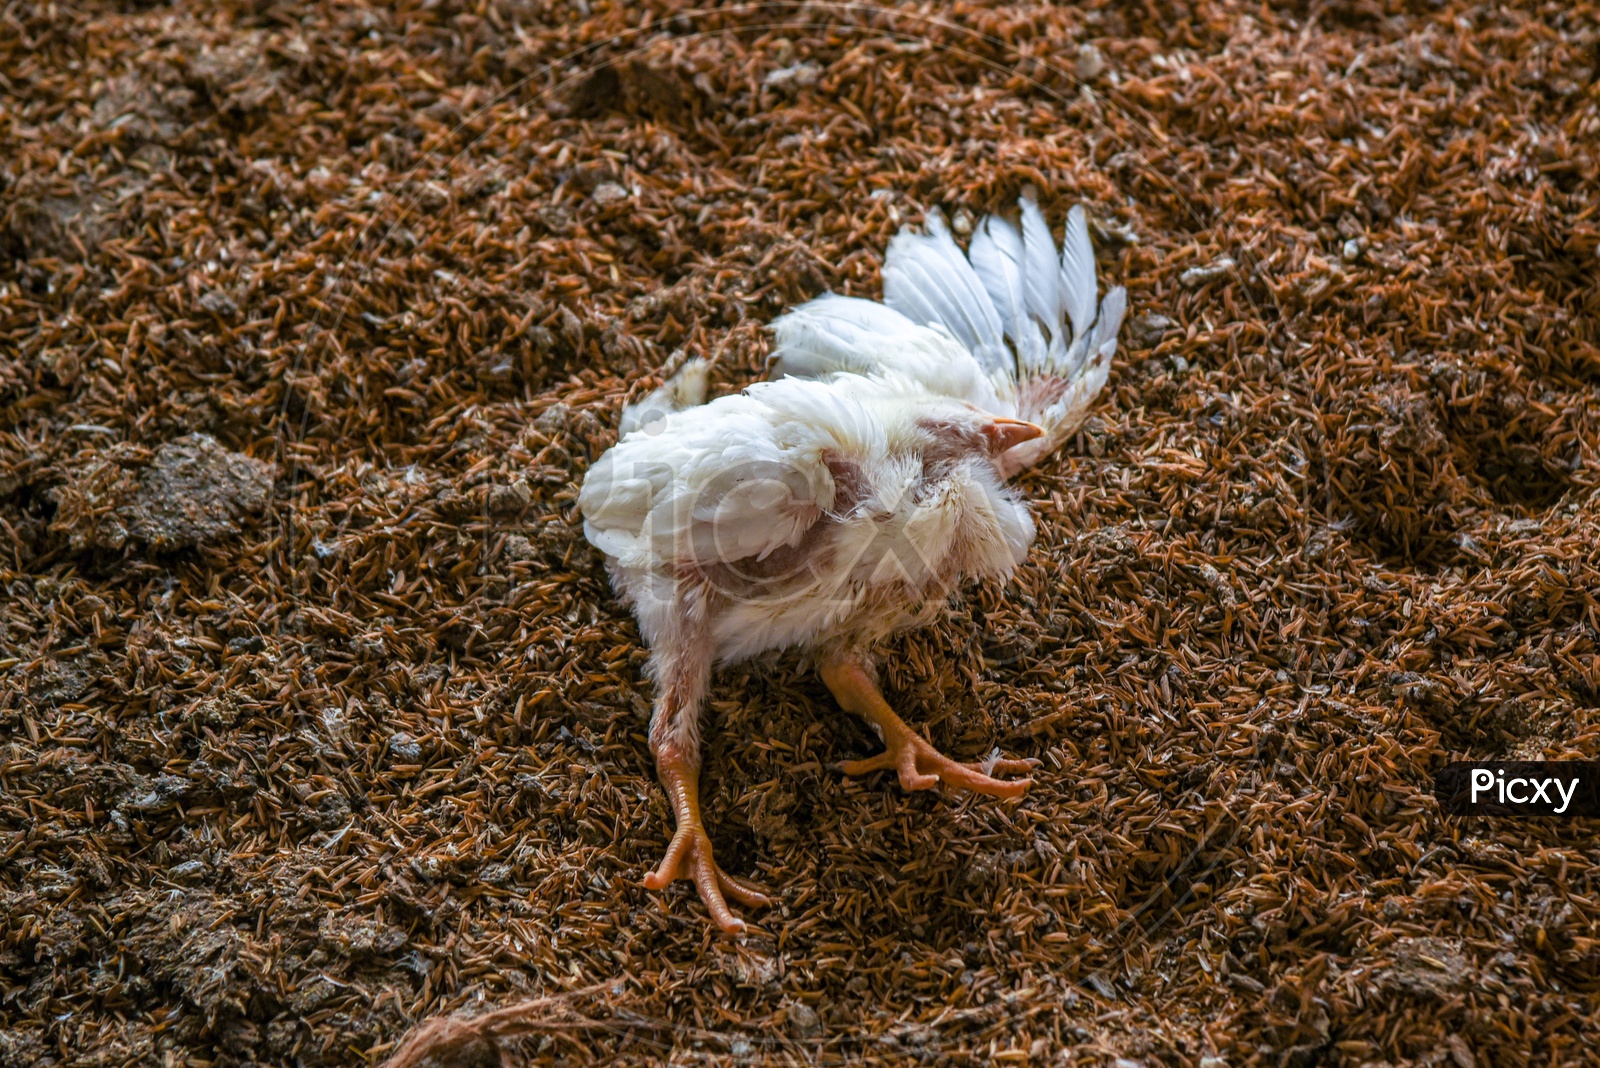 Dead chicken in a Poultry Farm